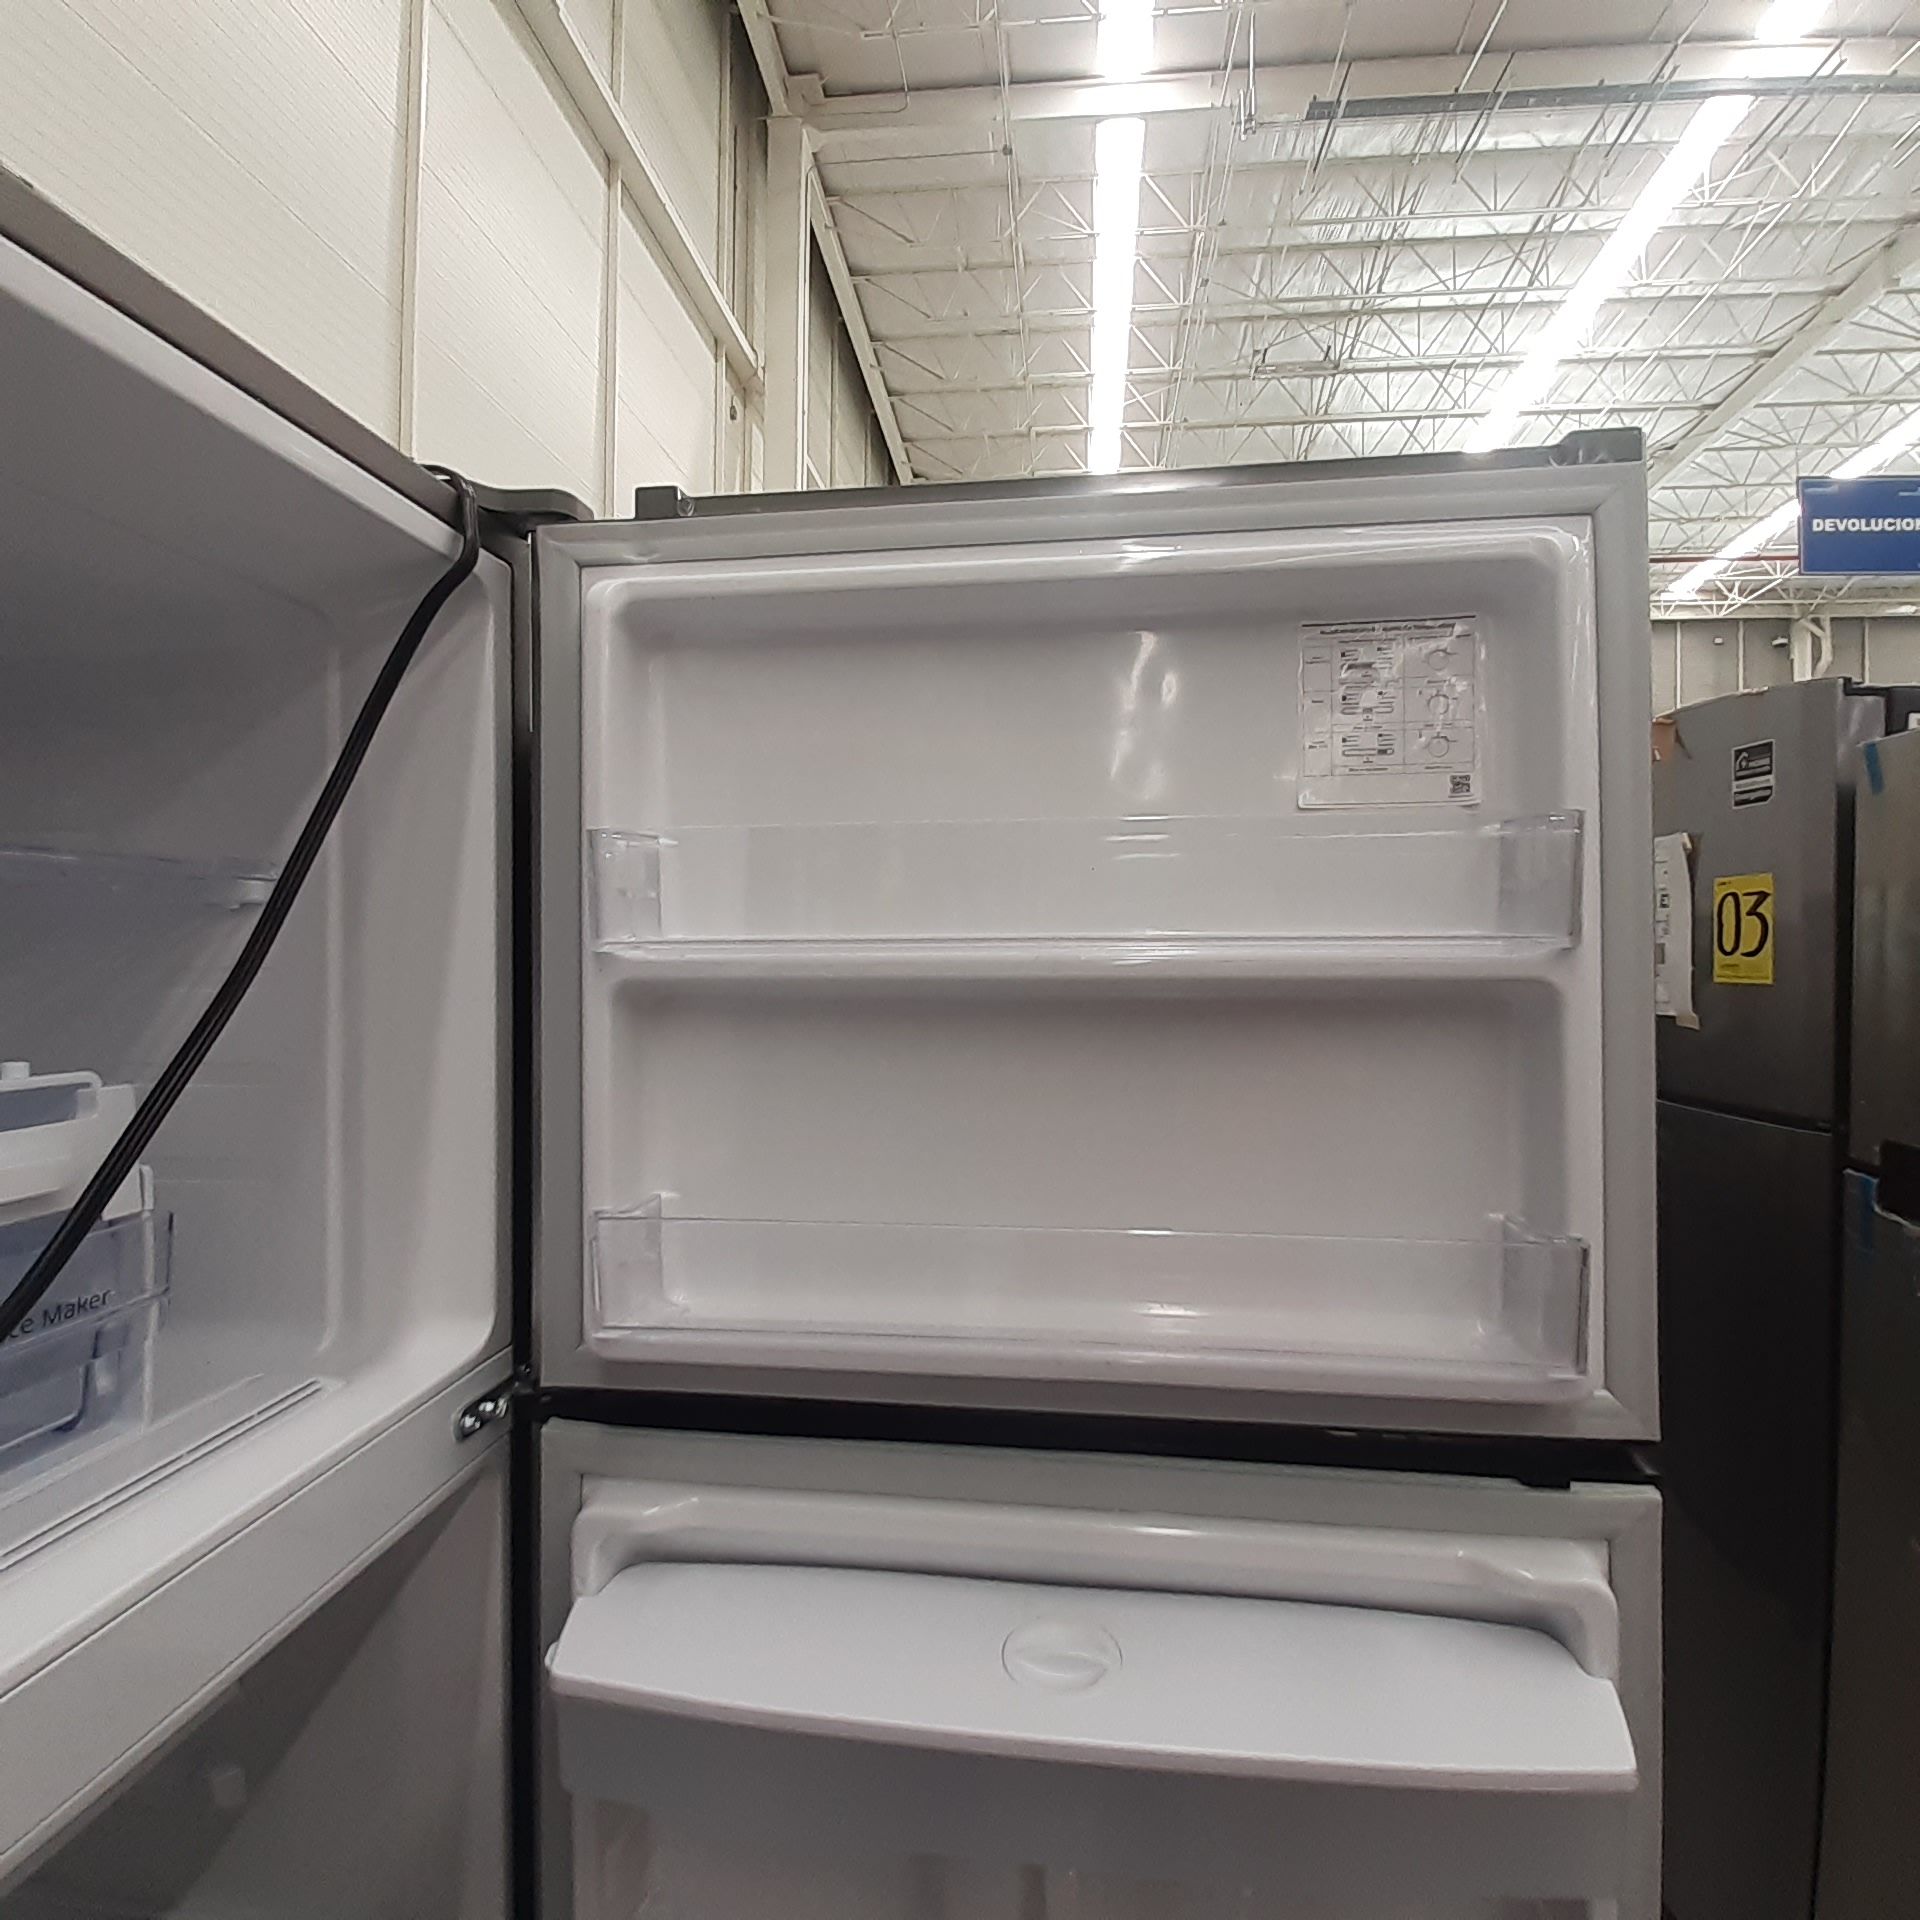 Lote De 2 Refrigeradores: 1 Refrigerador Marca Mabe, 1 Refrigerador Marca Winia, Distintos Modelos - Image 12 of 23